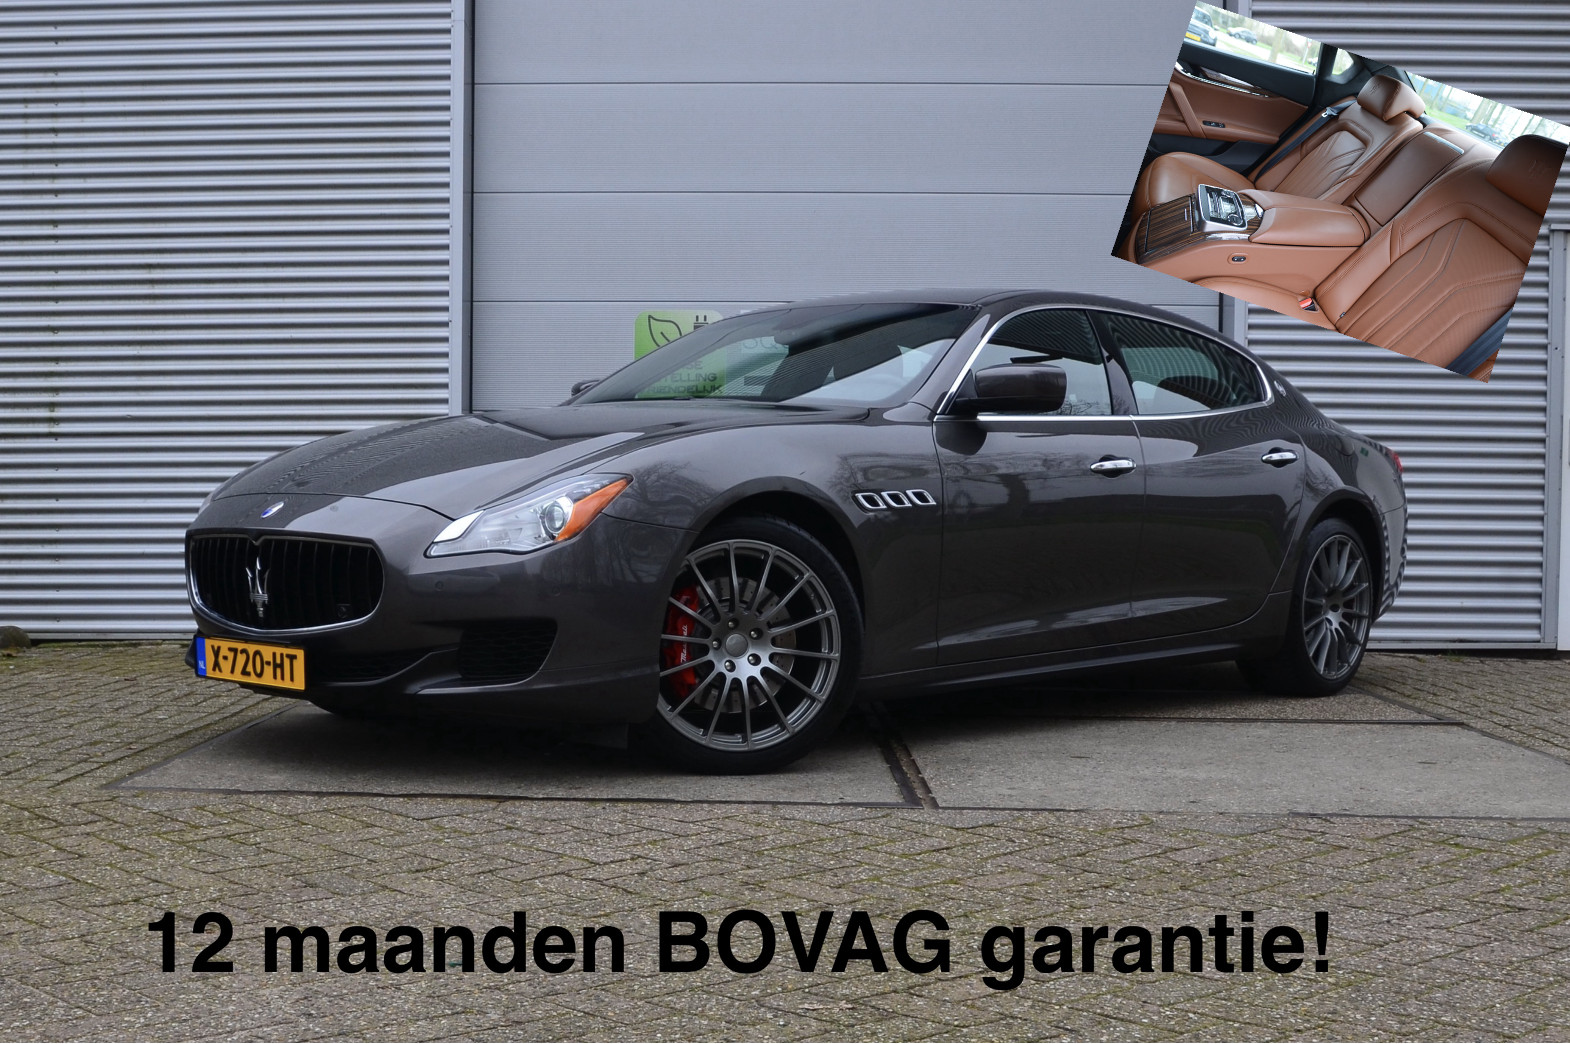 Maserati Quattroporte 3.0 S Q4 (4x4) Leder, 4-zits, Navi, fin. 955,- p/mnd bij viaBOVAG.nl